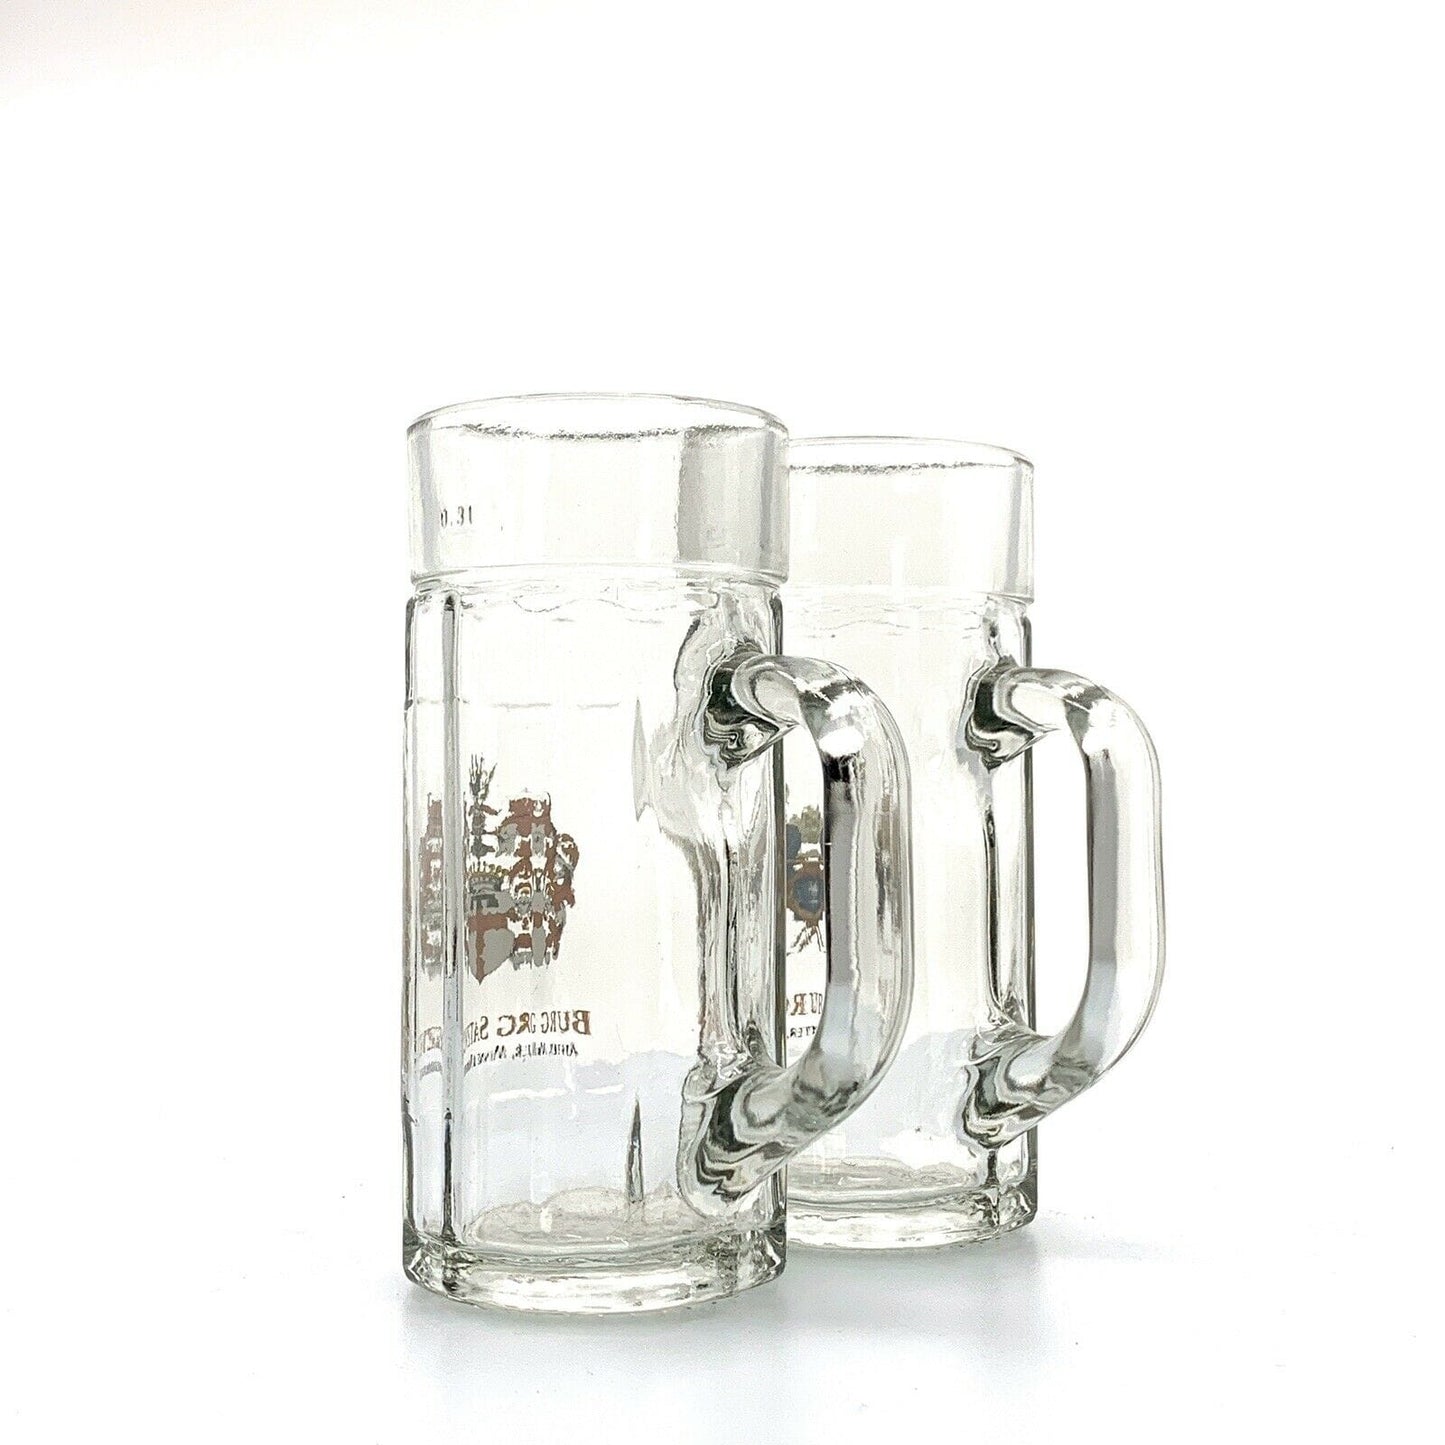 Burg Satzvey Mechernich, Germany Castle Souvenir 0.3L Glass Mugs - Set Of 2